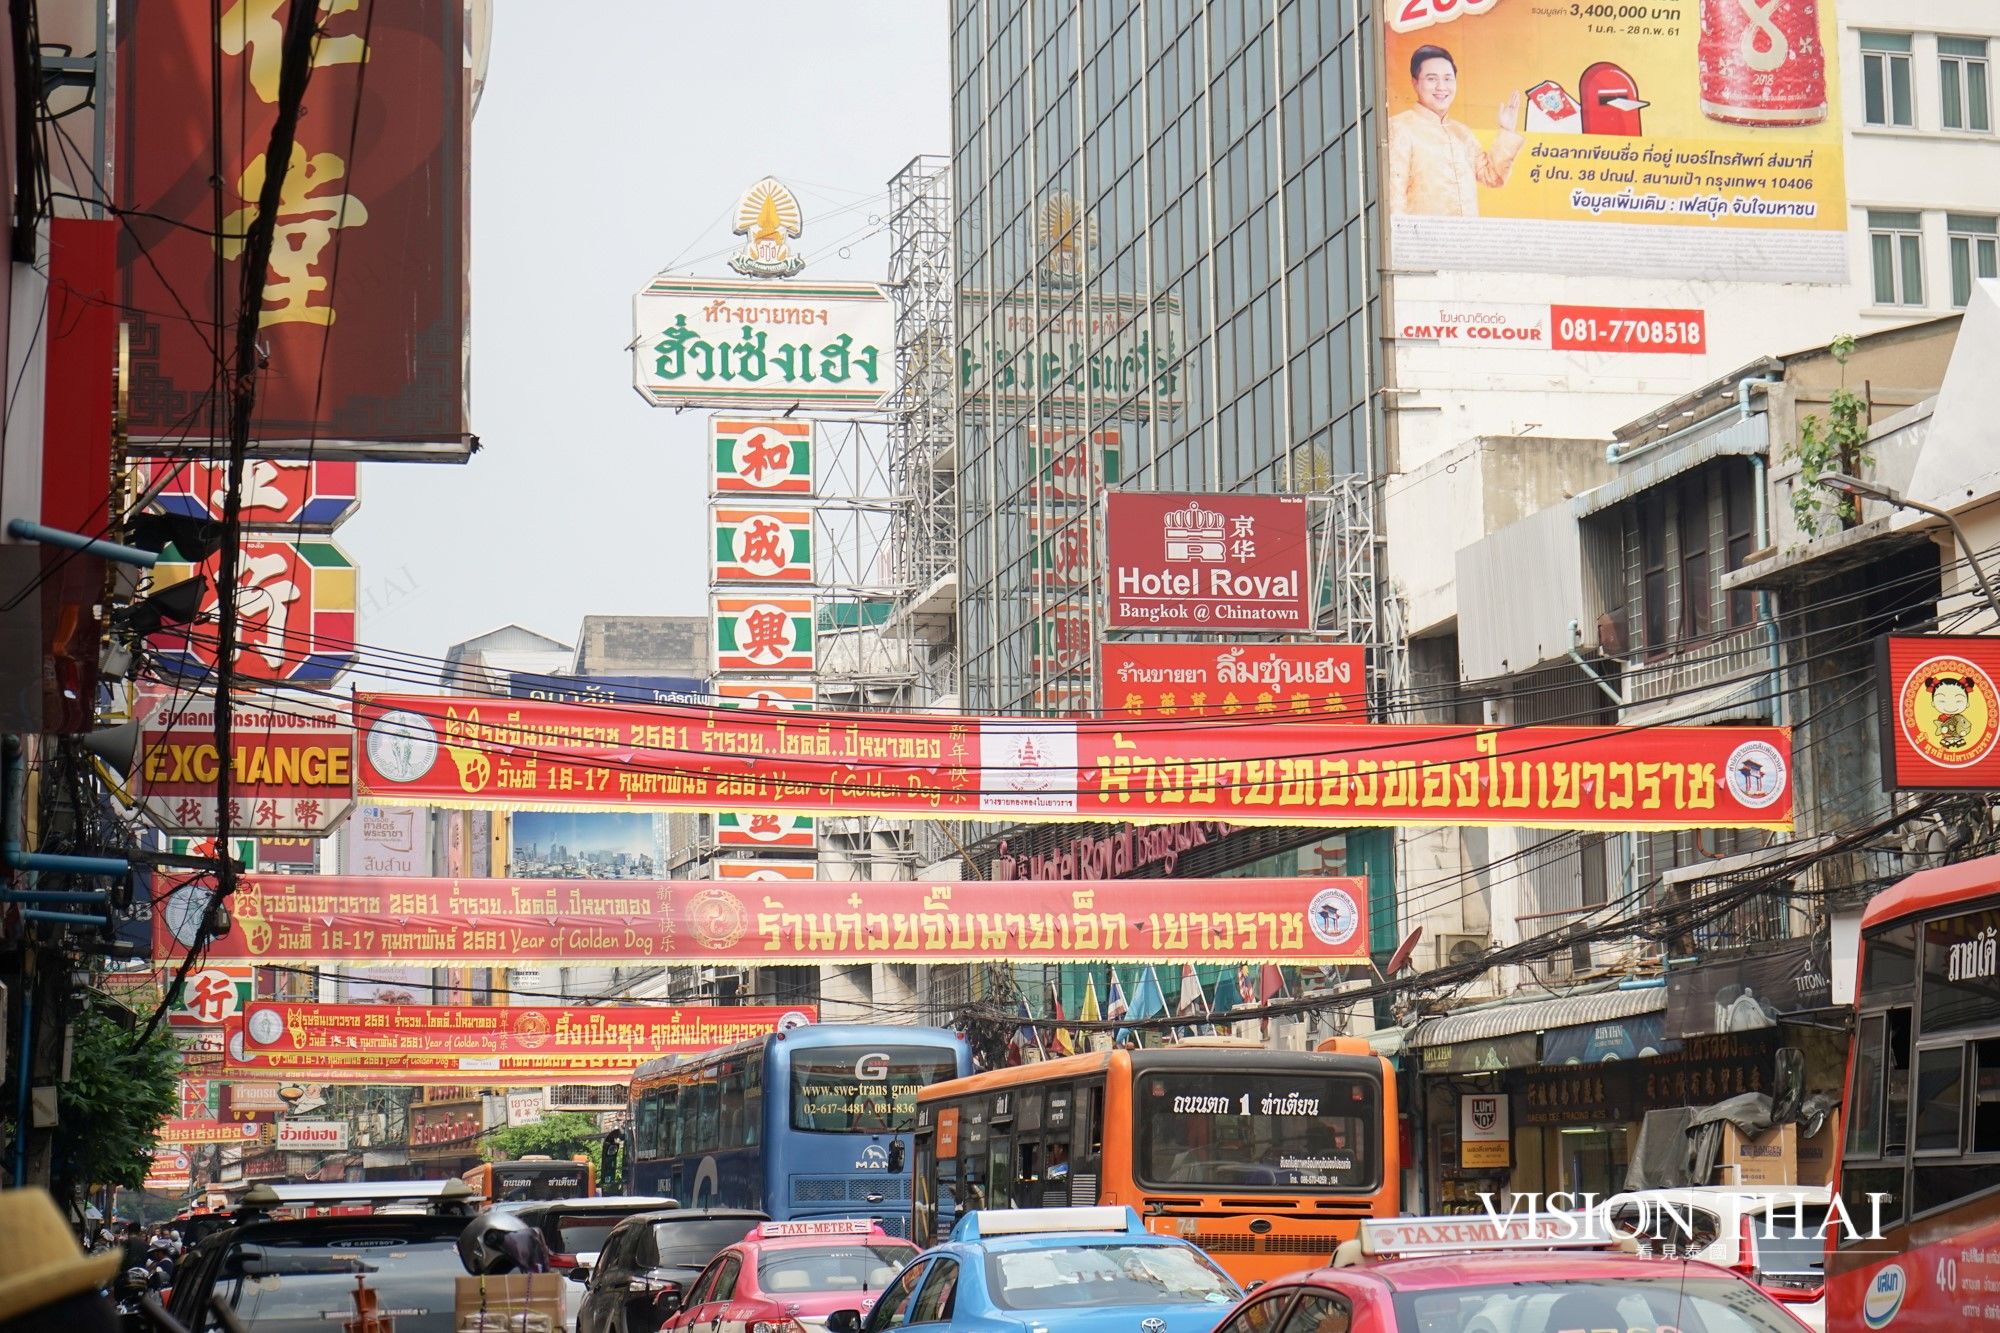 曼谷中国城泰国移民缩影走一圈吃到撑的美食大本营 影